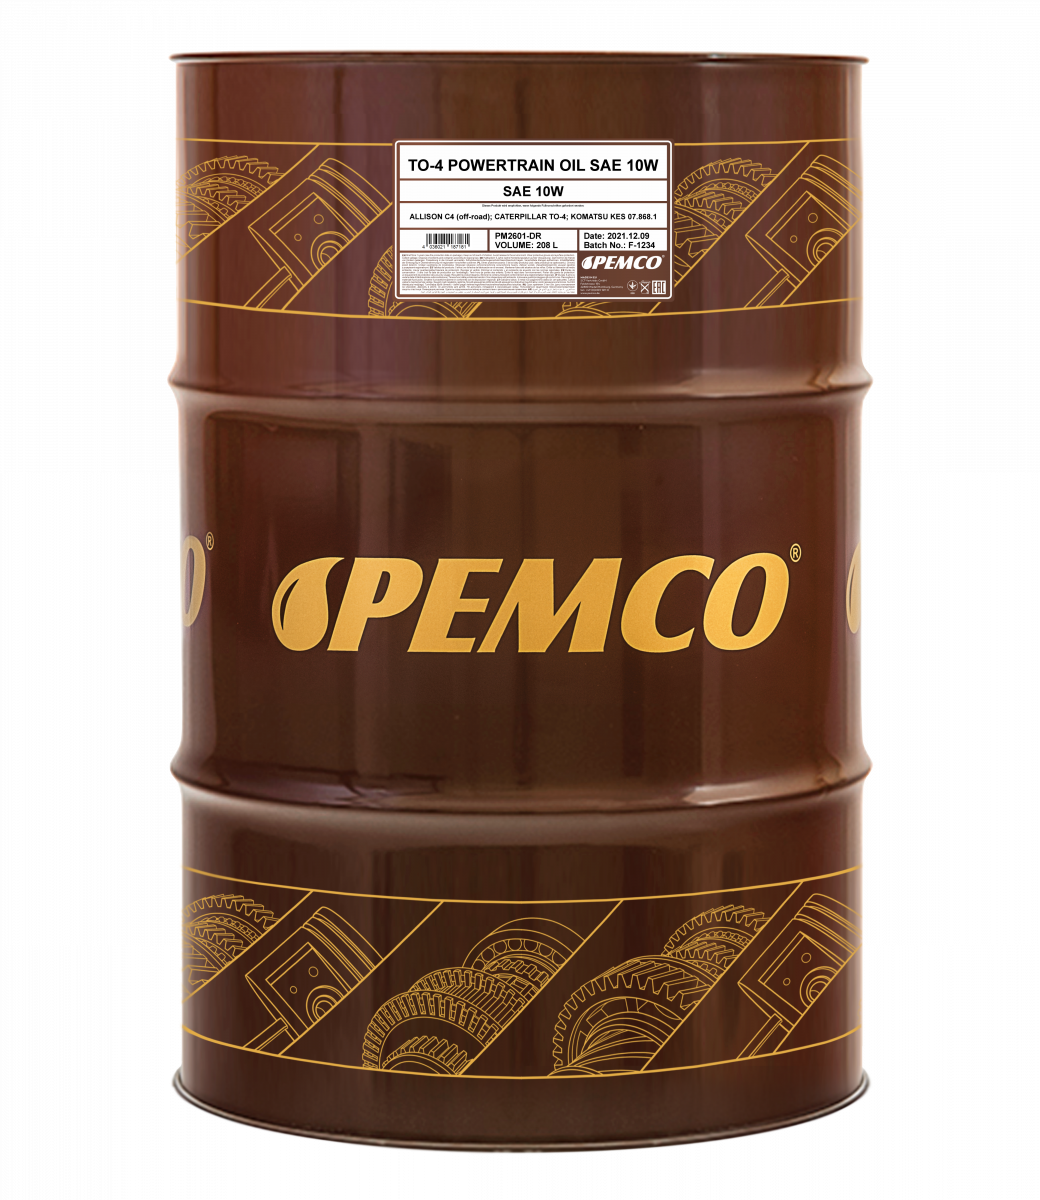 Гидравлическое масло PEMCO TO-4 Powertrain 10W минеральное, 208л (PM2601-DR)